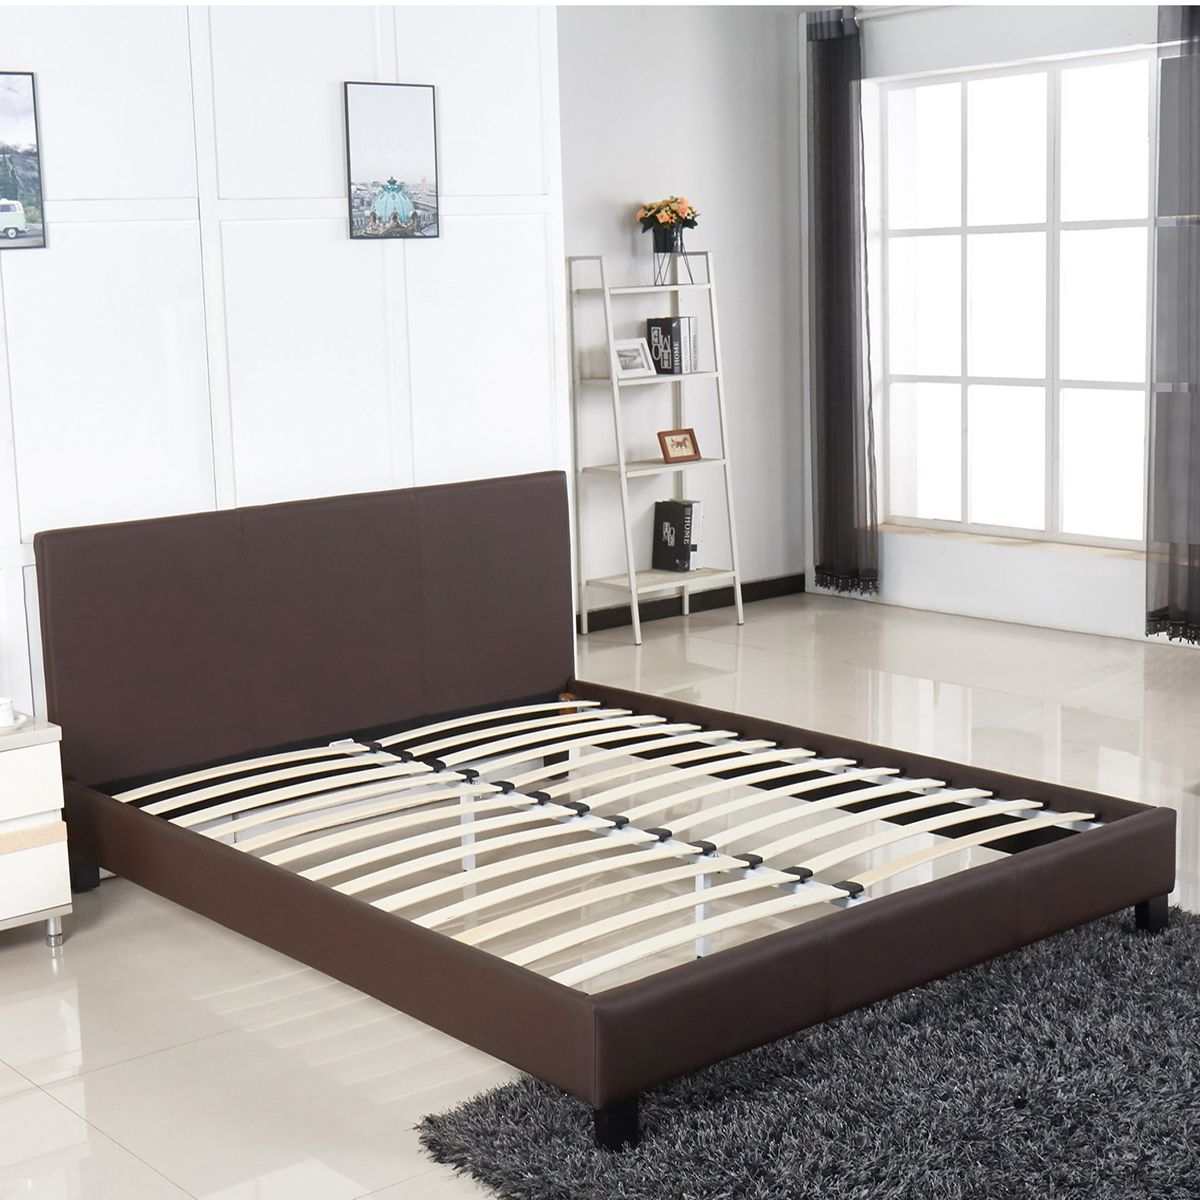 Κρεβάτι AZALEA Σκούρο Καφέ PU 213x168x88cm (Στρώμα 160x200cm)